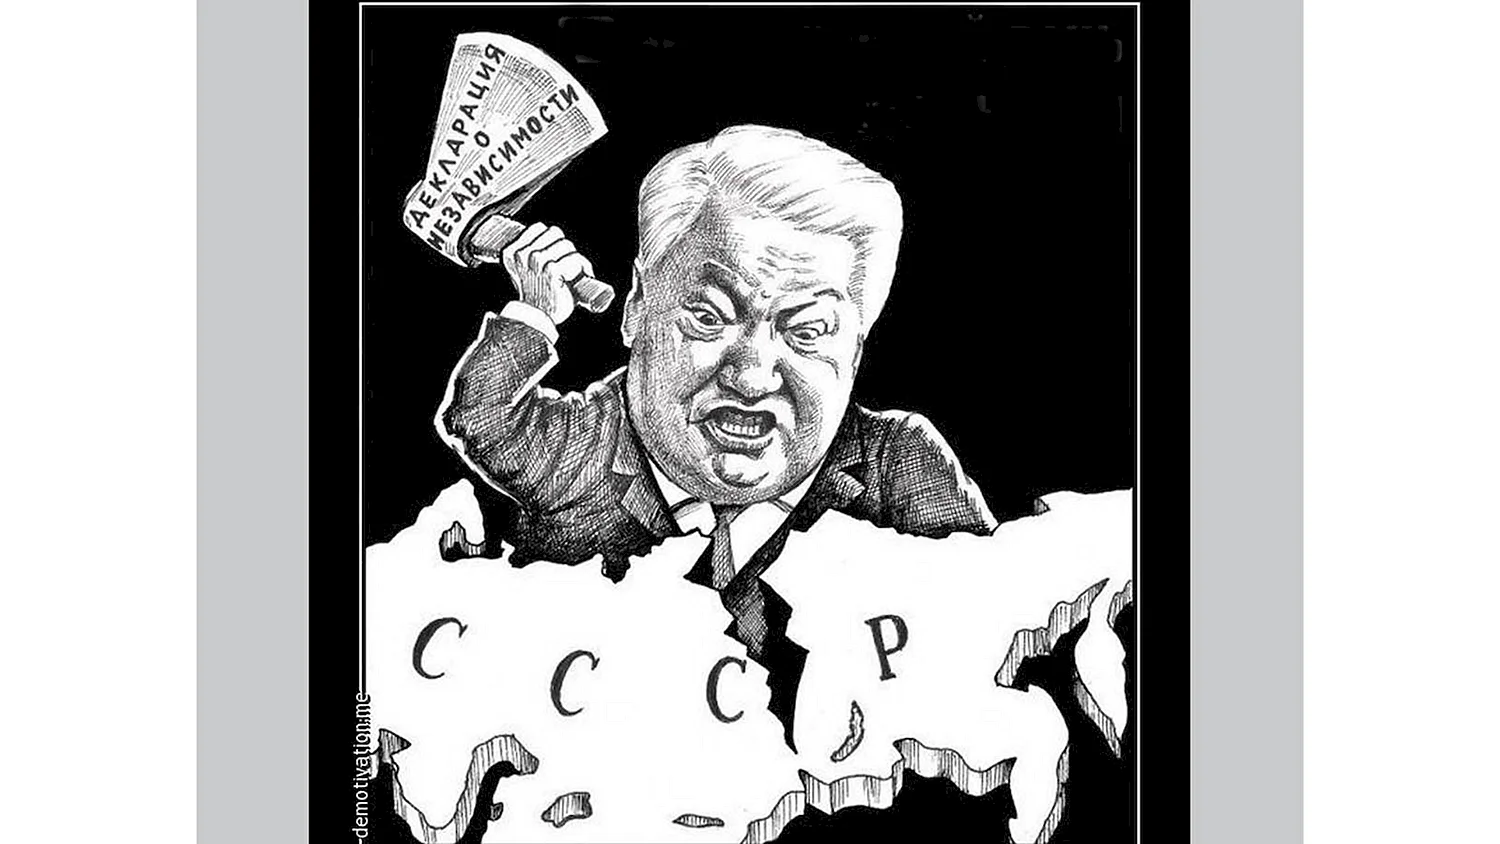 Ельцин карикатура